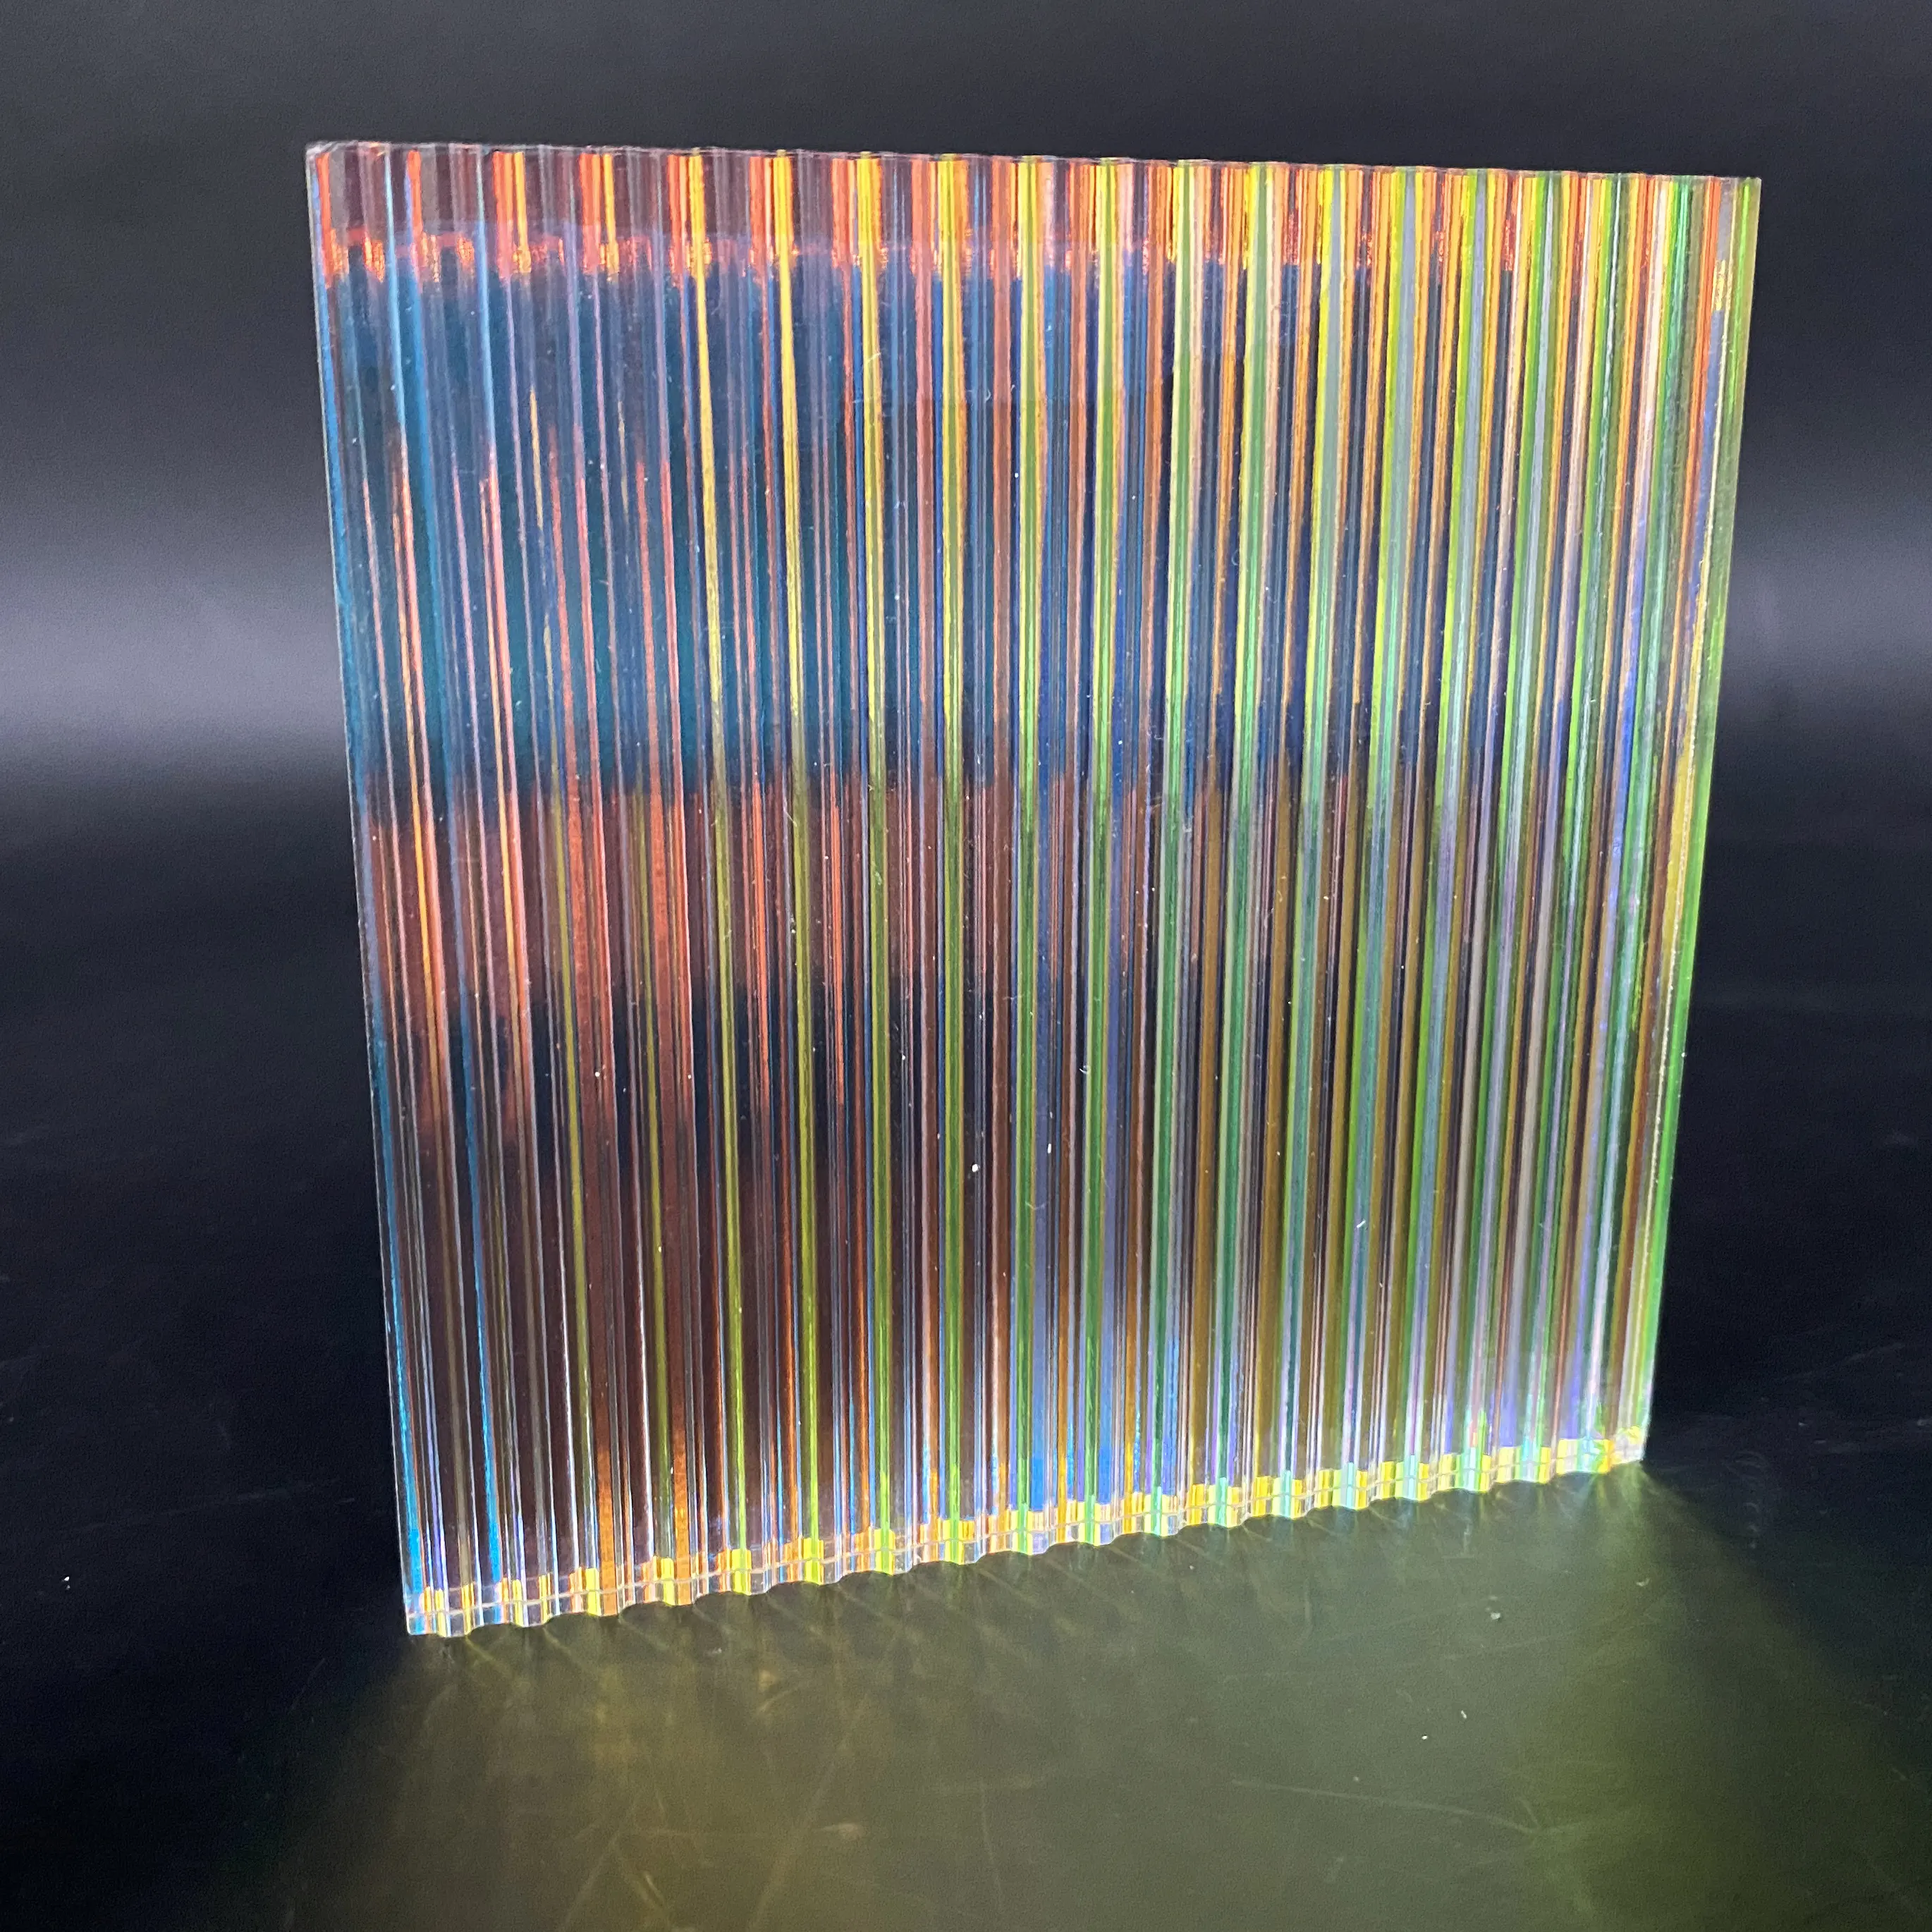 3MM-10MM קשת פס אקריליק גיליון/קסם צבע מים אדווה/רוק דפוס פלסטיק חומר עבור קישוט/ריהוט/מלאכות